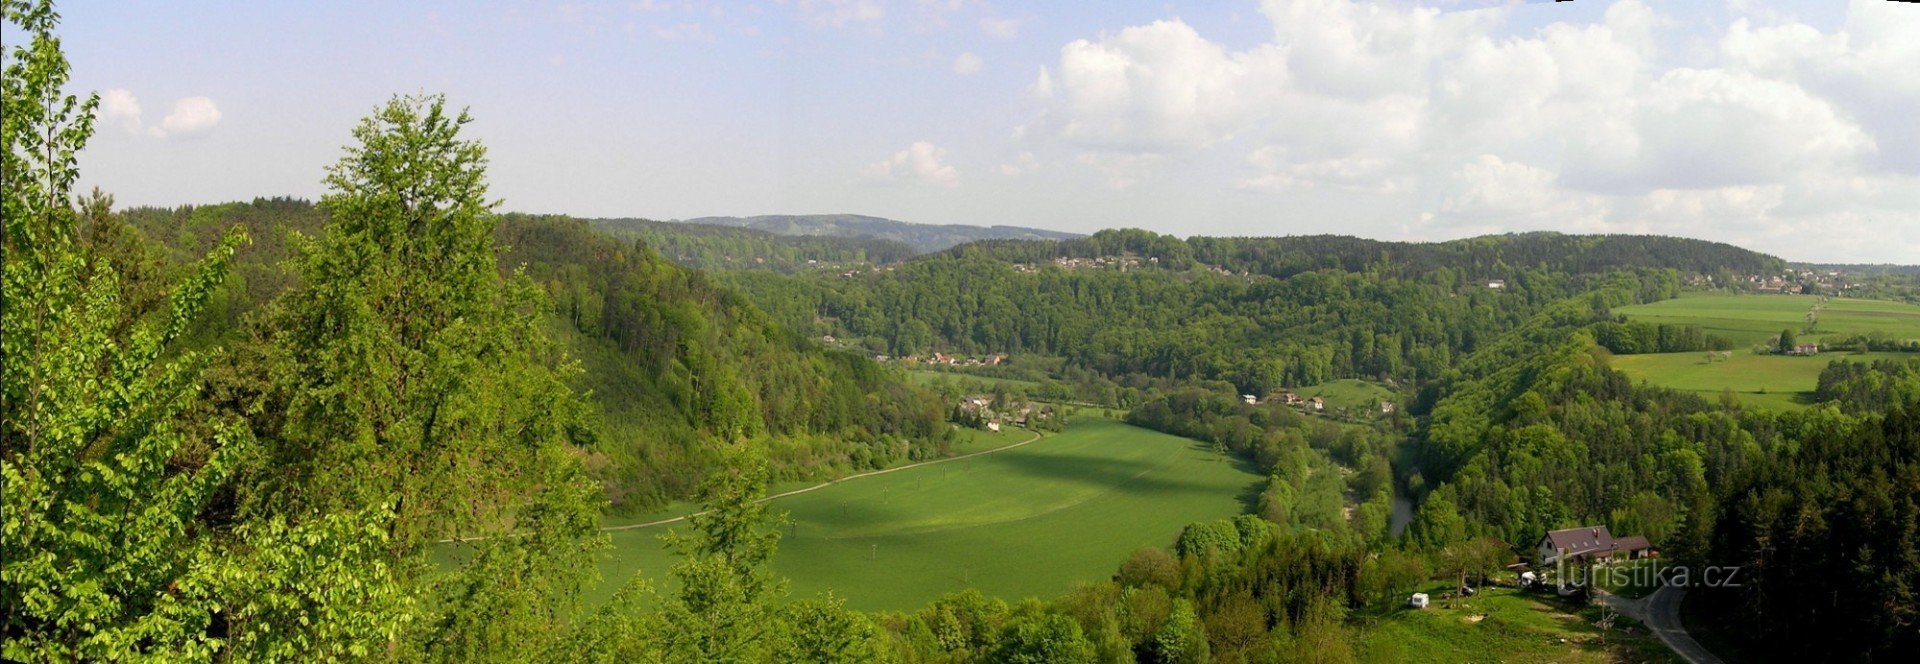 Vallée de Jizera depuis Zdenčina skály